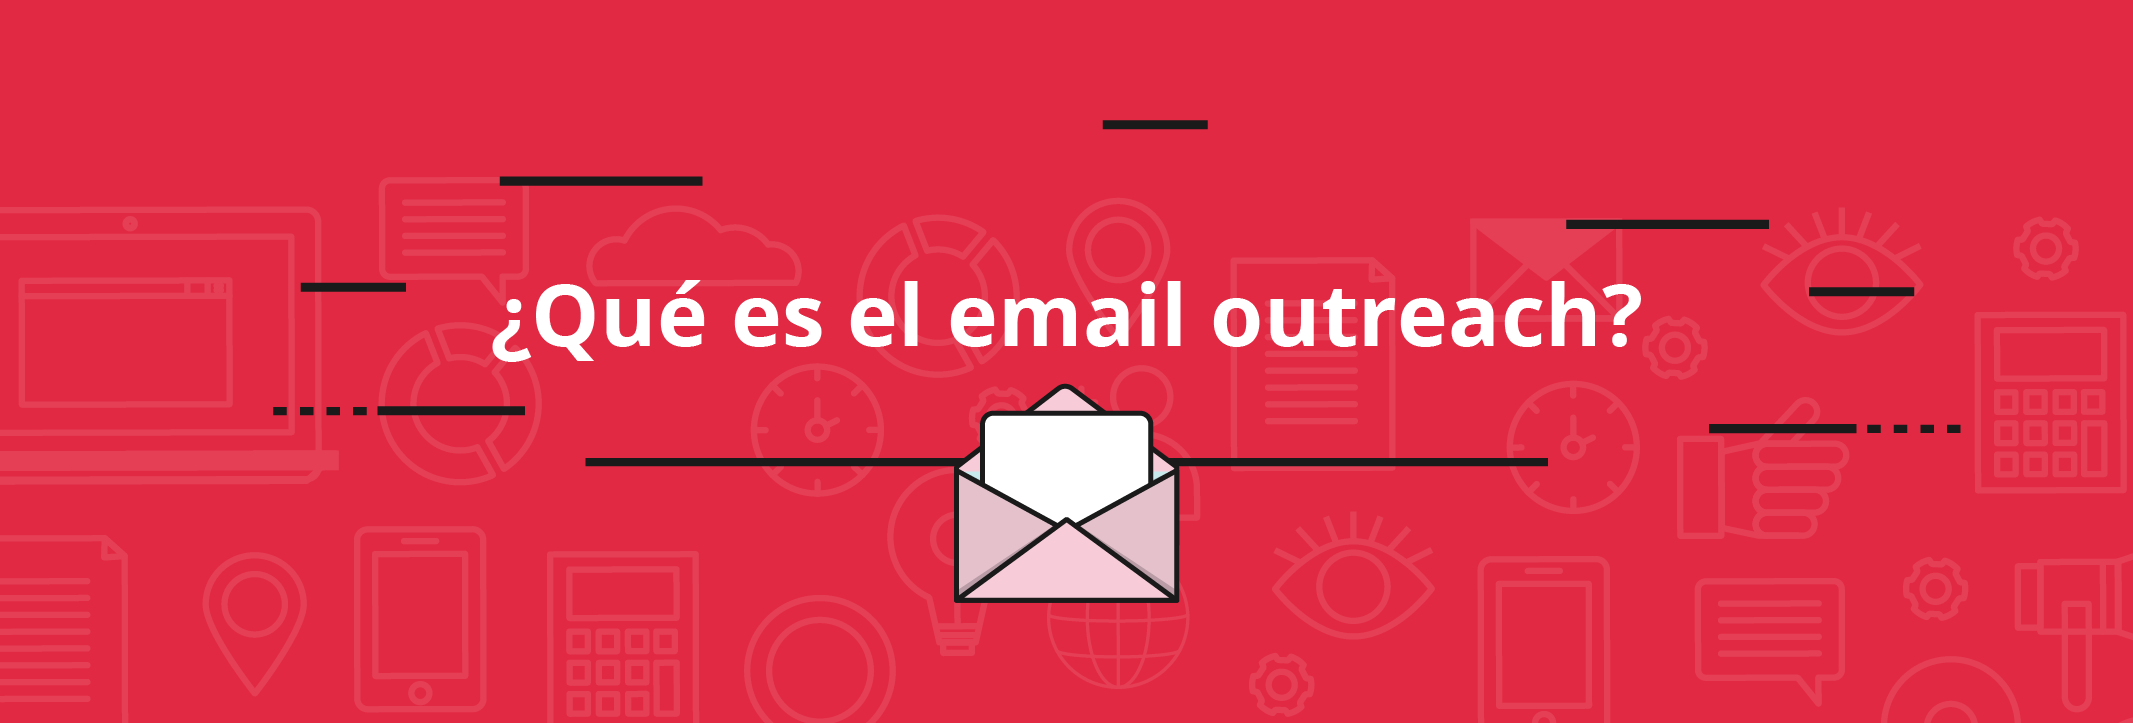 Qué es el email outreach